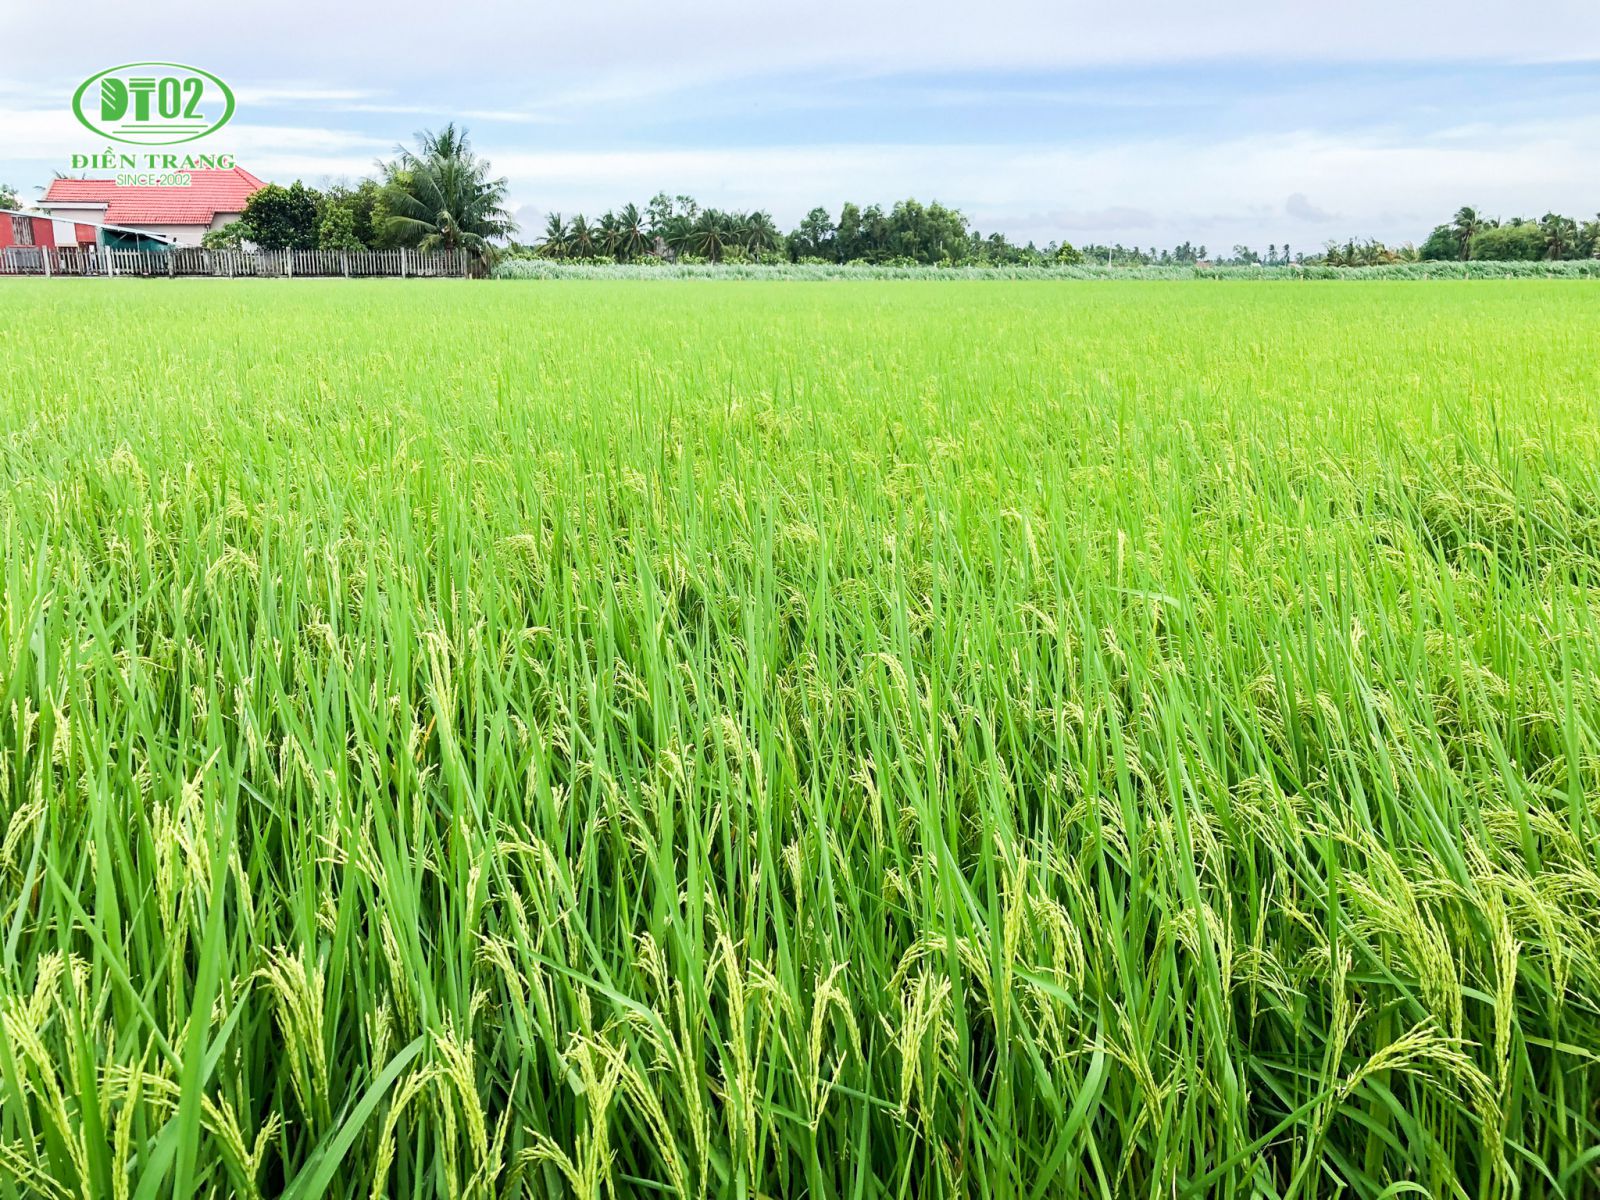 Sản xuất lúa theo hướng hữu cơ có lãi gần 18 triệu đồngha  BÁO QUẢNG NAM  ONLINE  Tin tức mới nhất